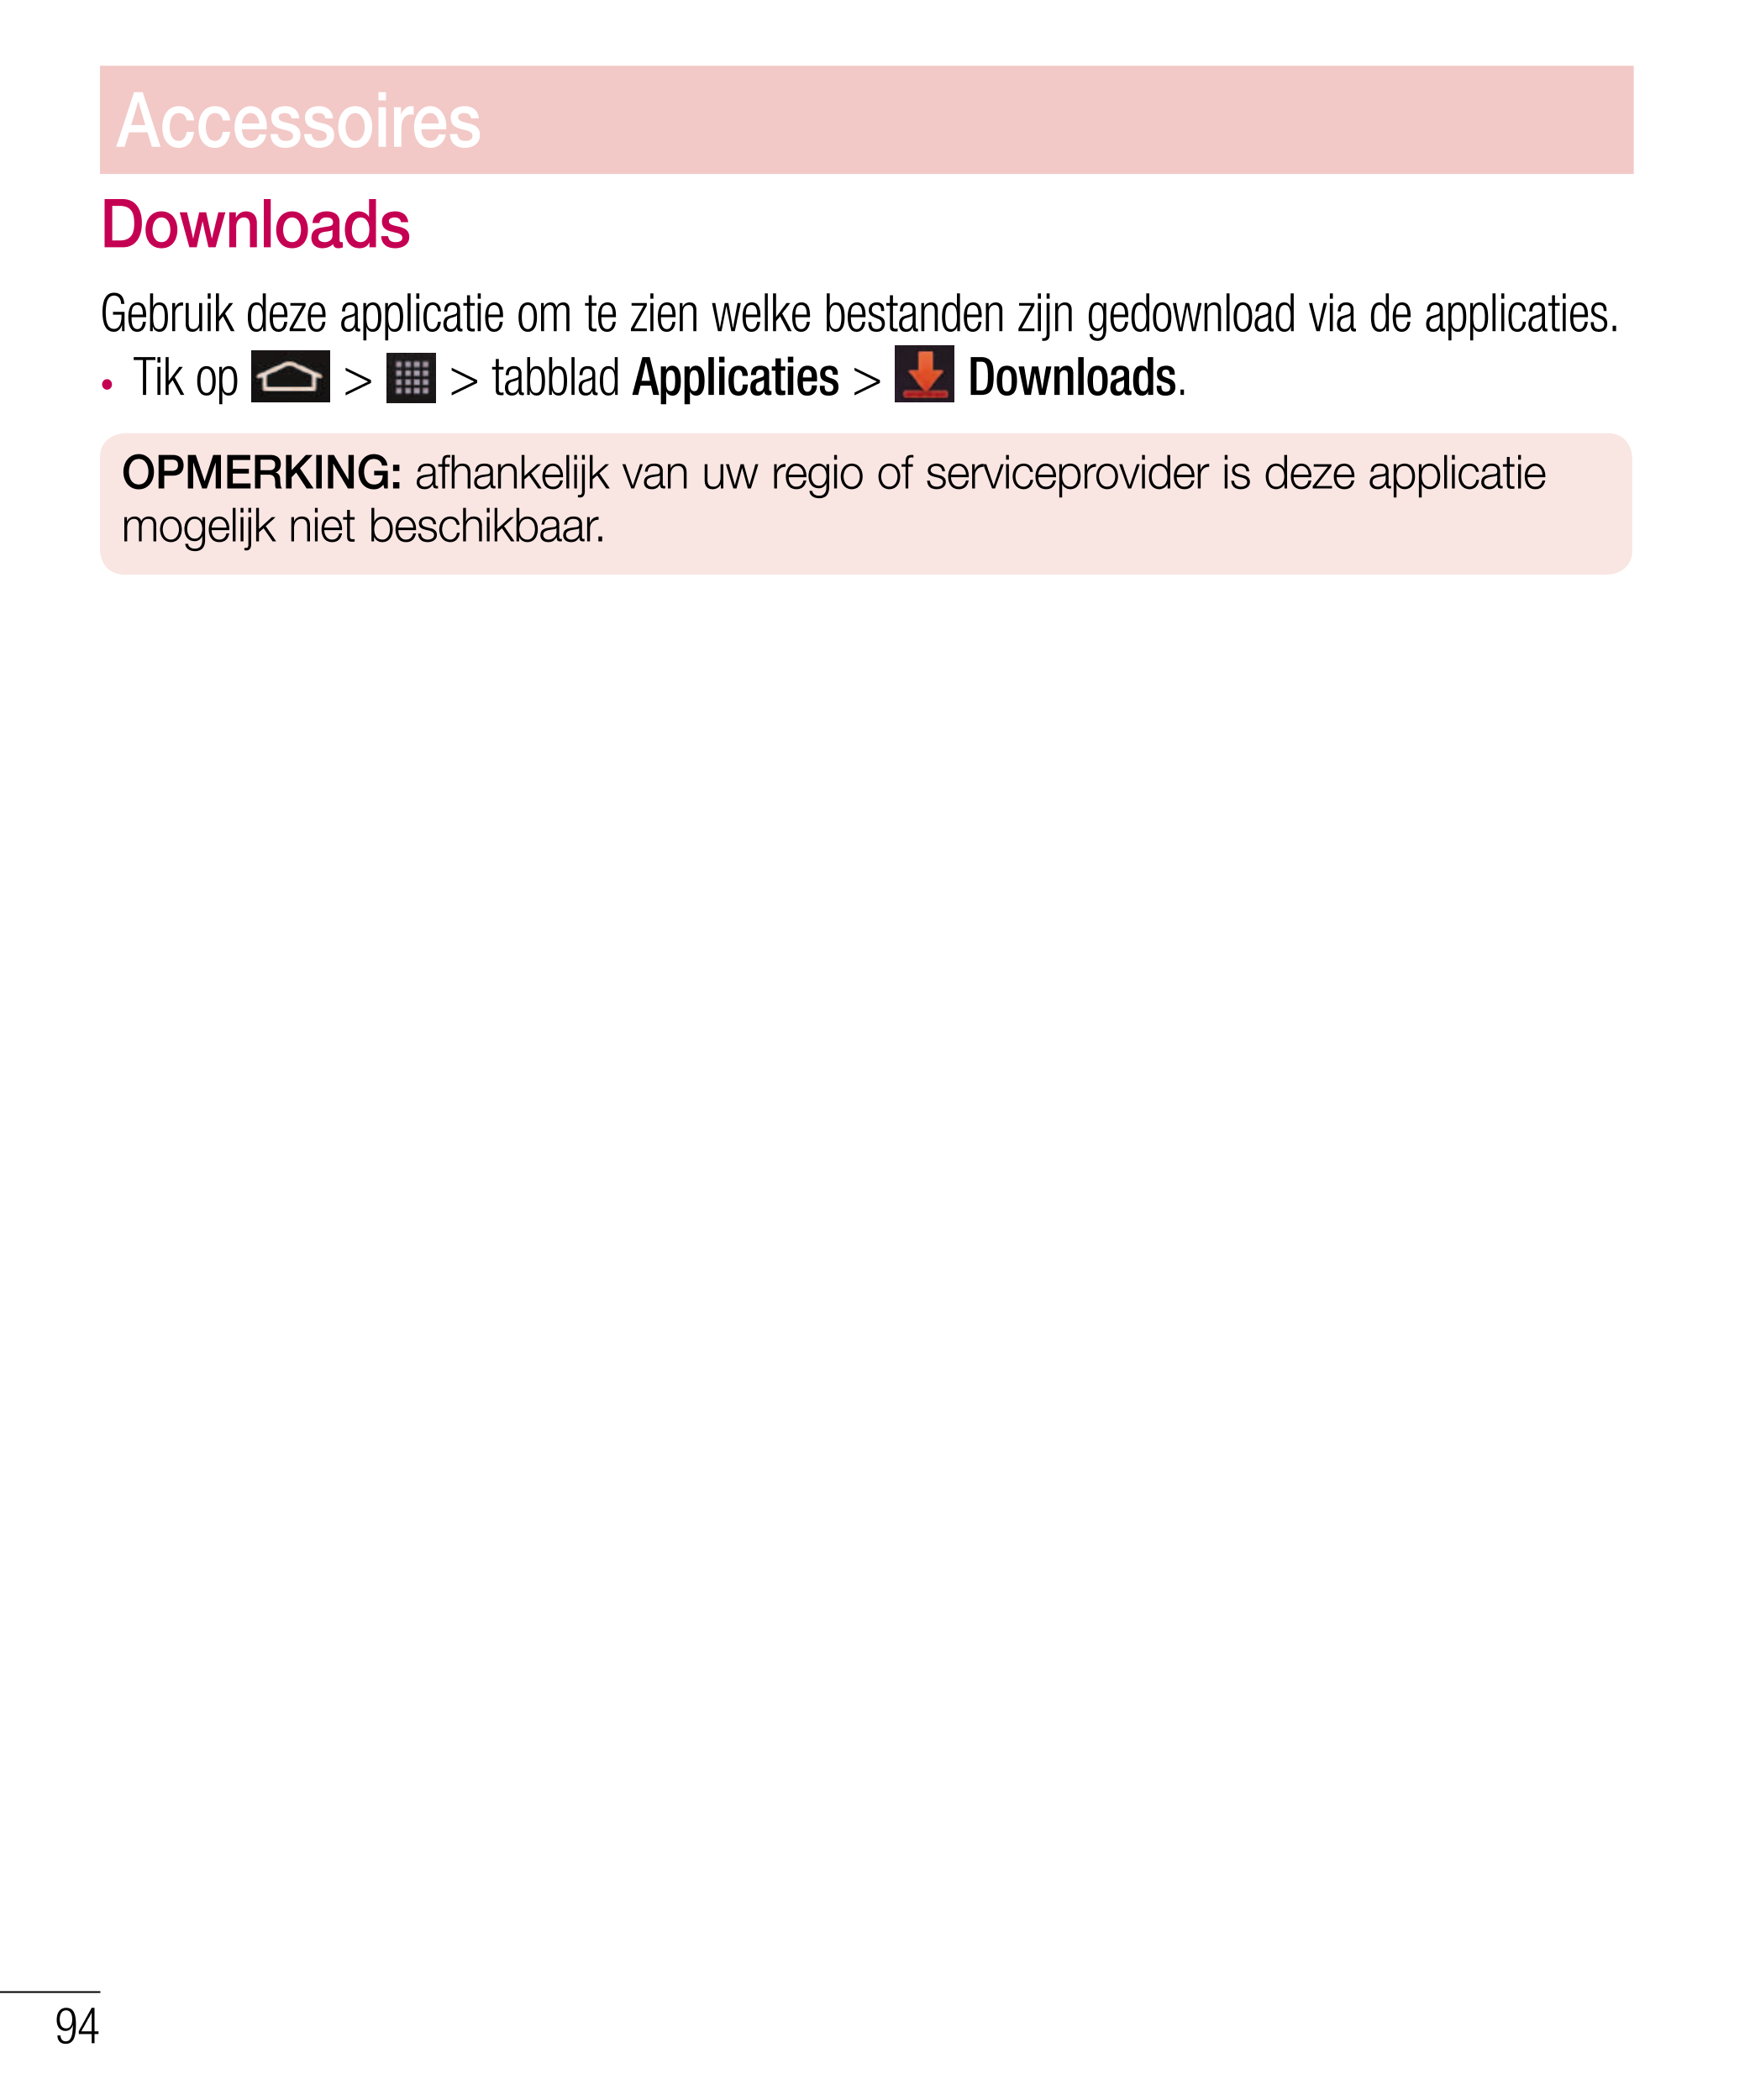 Accessoires
Downloads
Gebruik deze applicatie om te zien welke bestanden zijn gedownload via de applicaties.
•  Tik op   >   > t